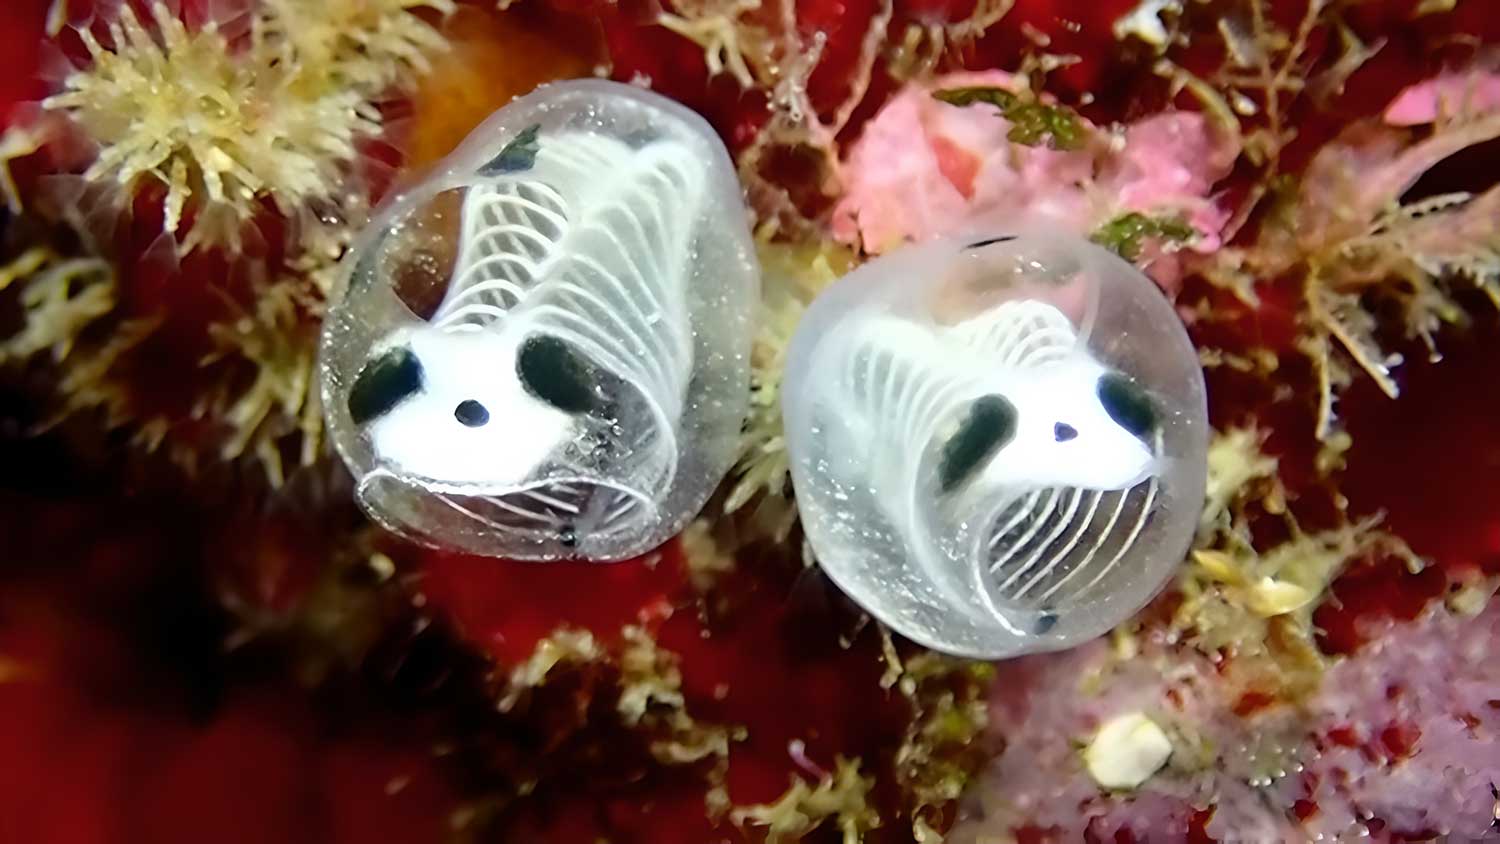 Panda-esqueleto-do-mar: cientistas descobrem nova espécie marinha - Mundo & História